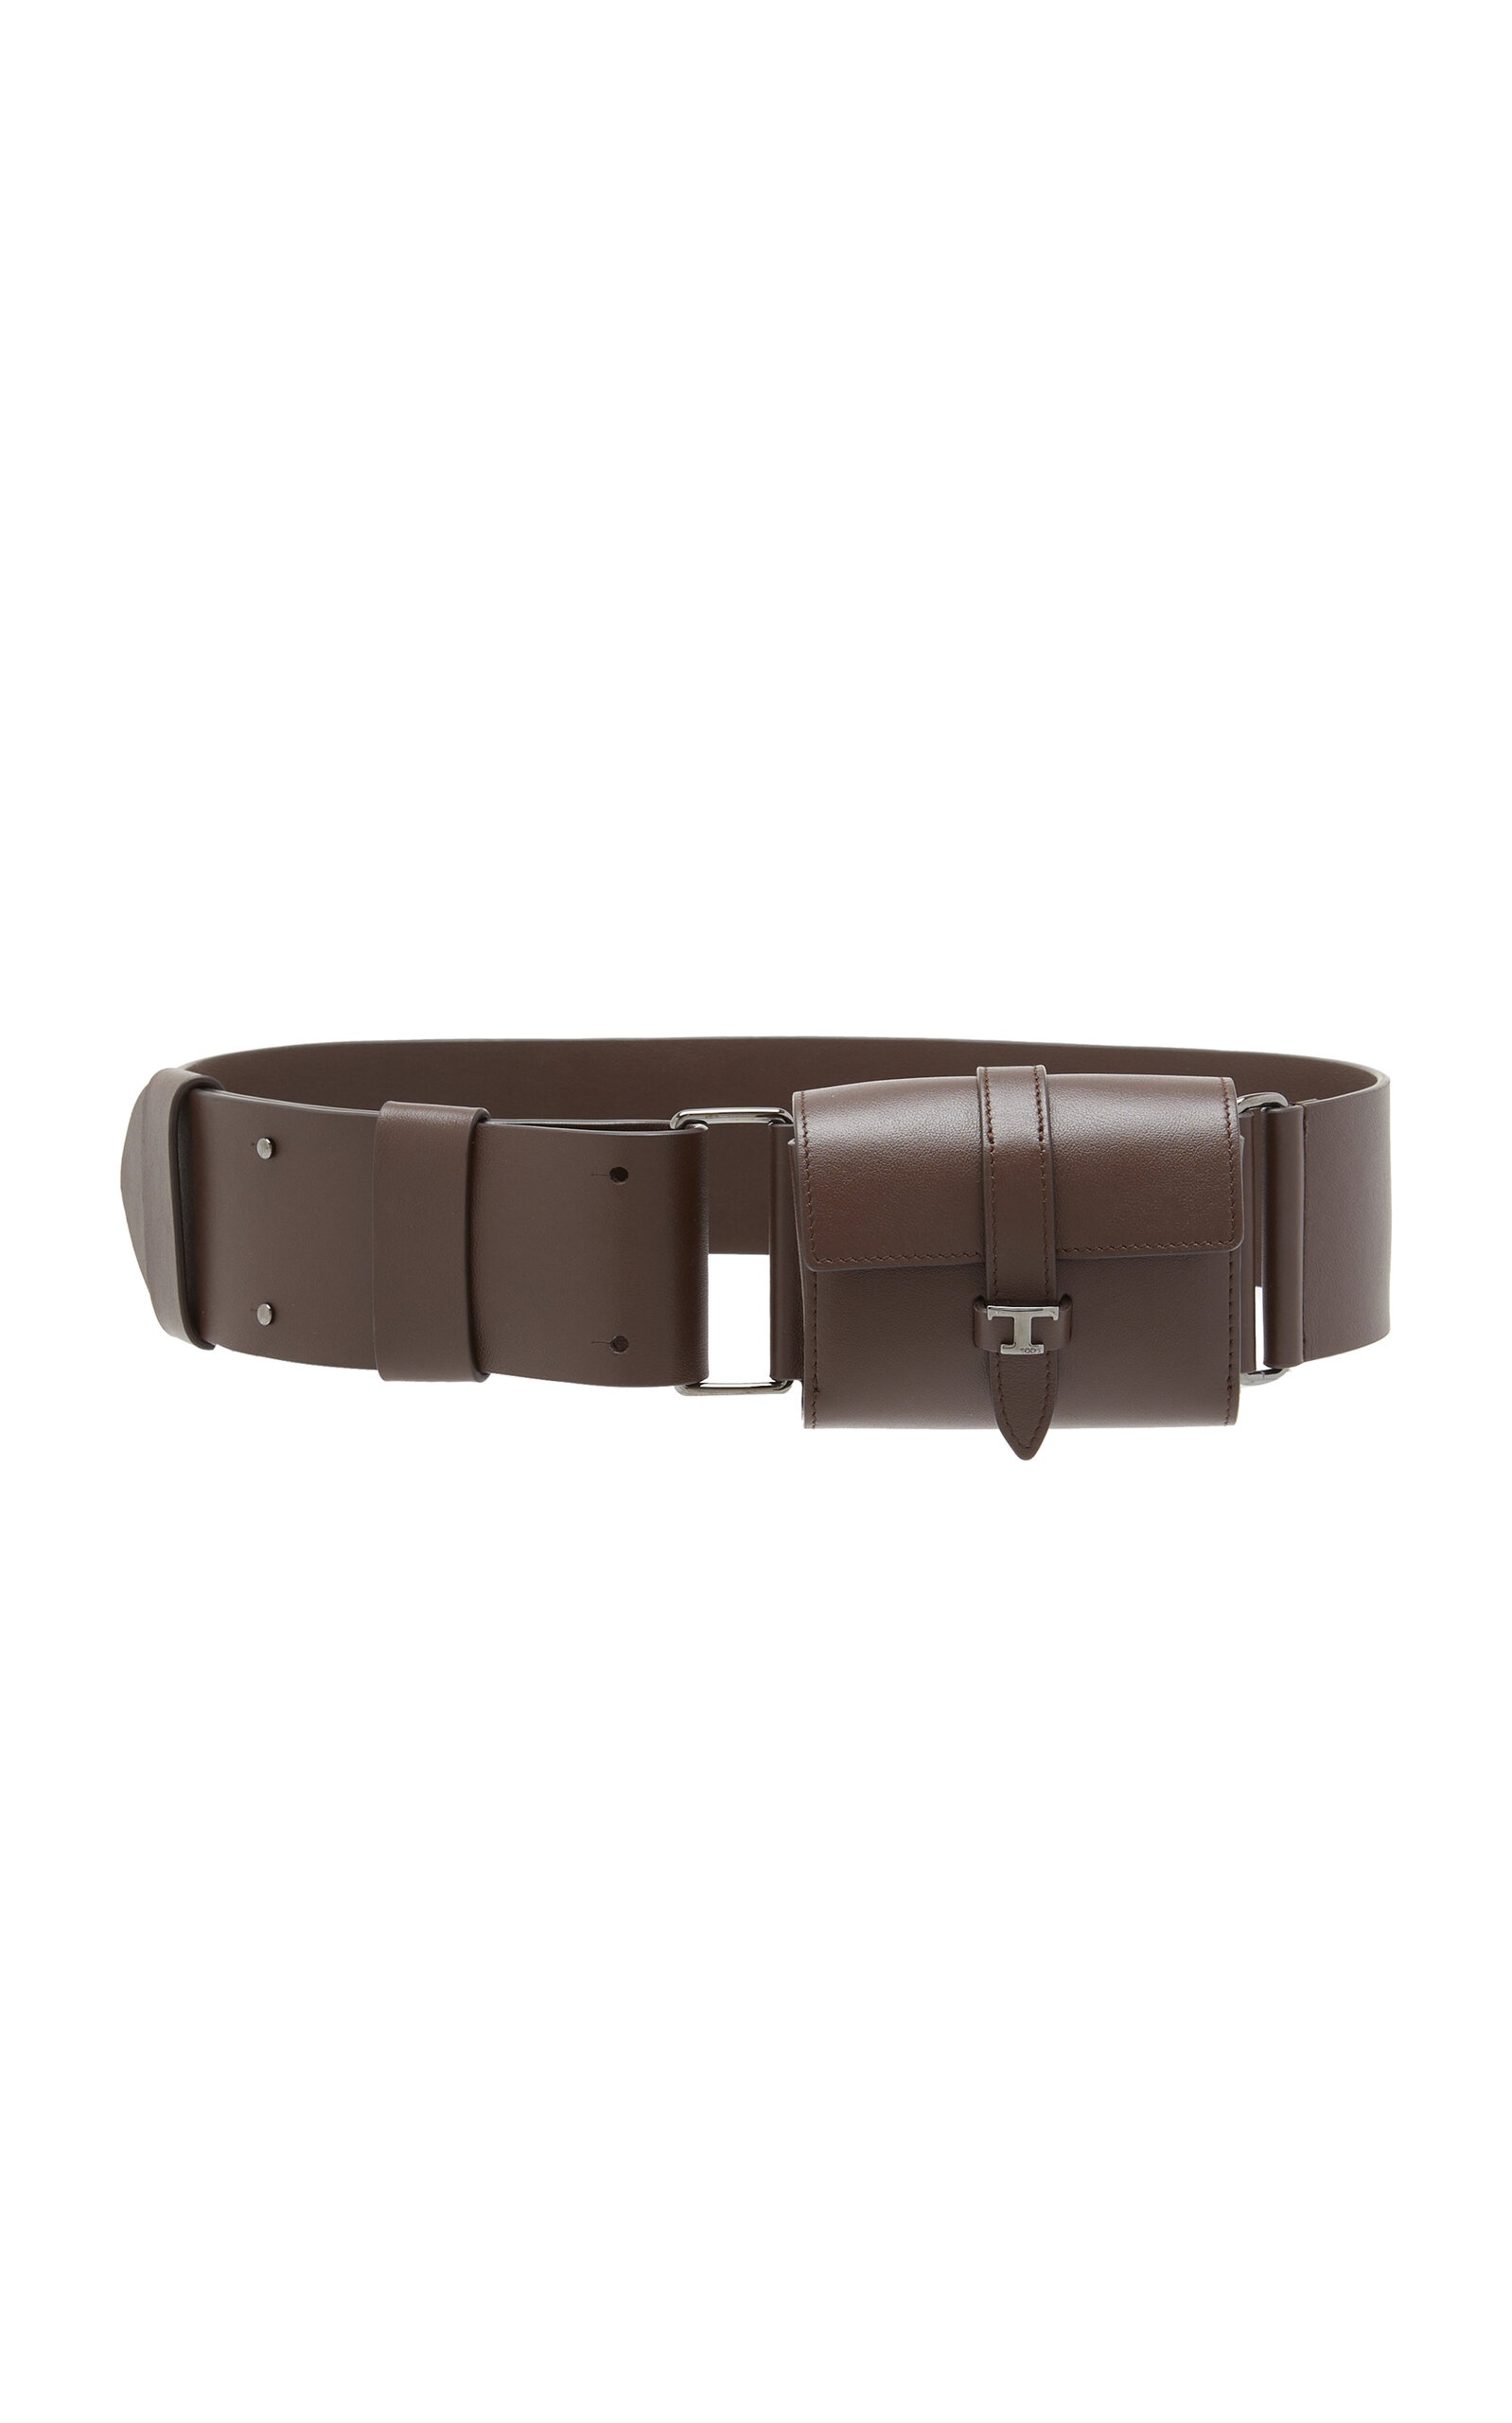 T Leather Belt Bag brown - 1